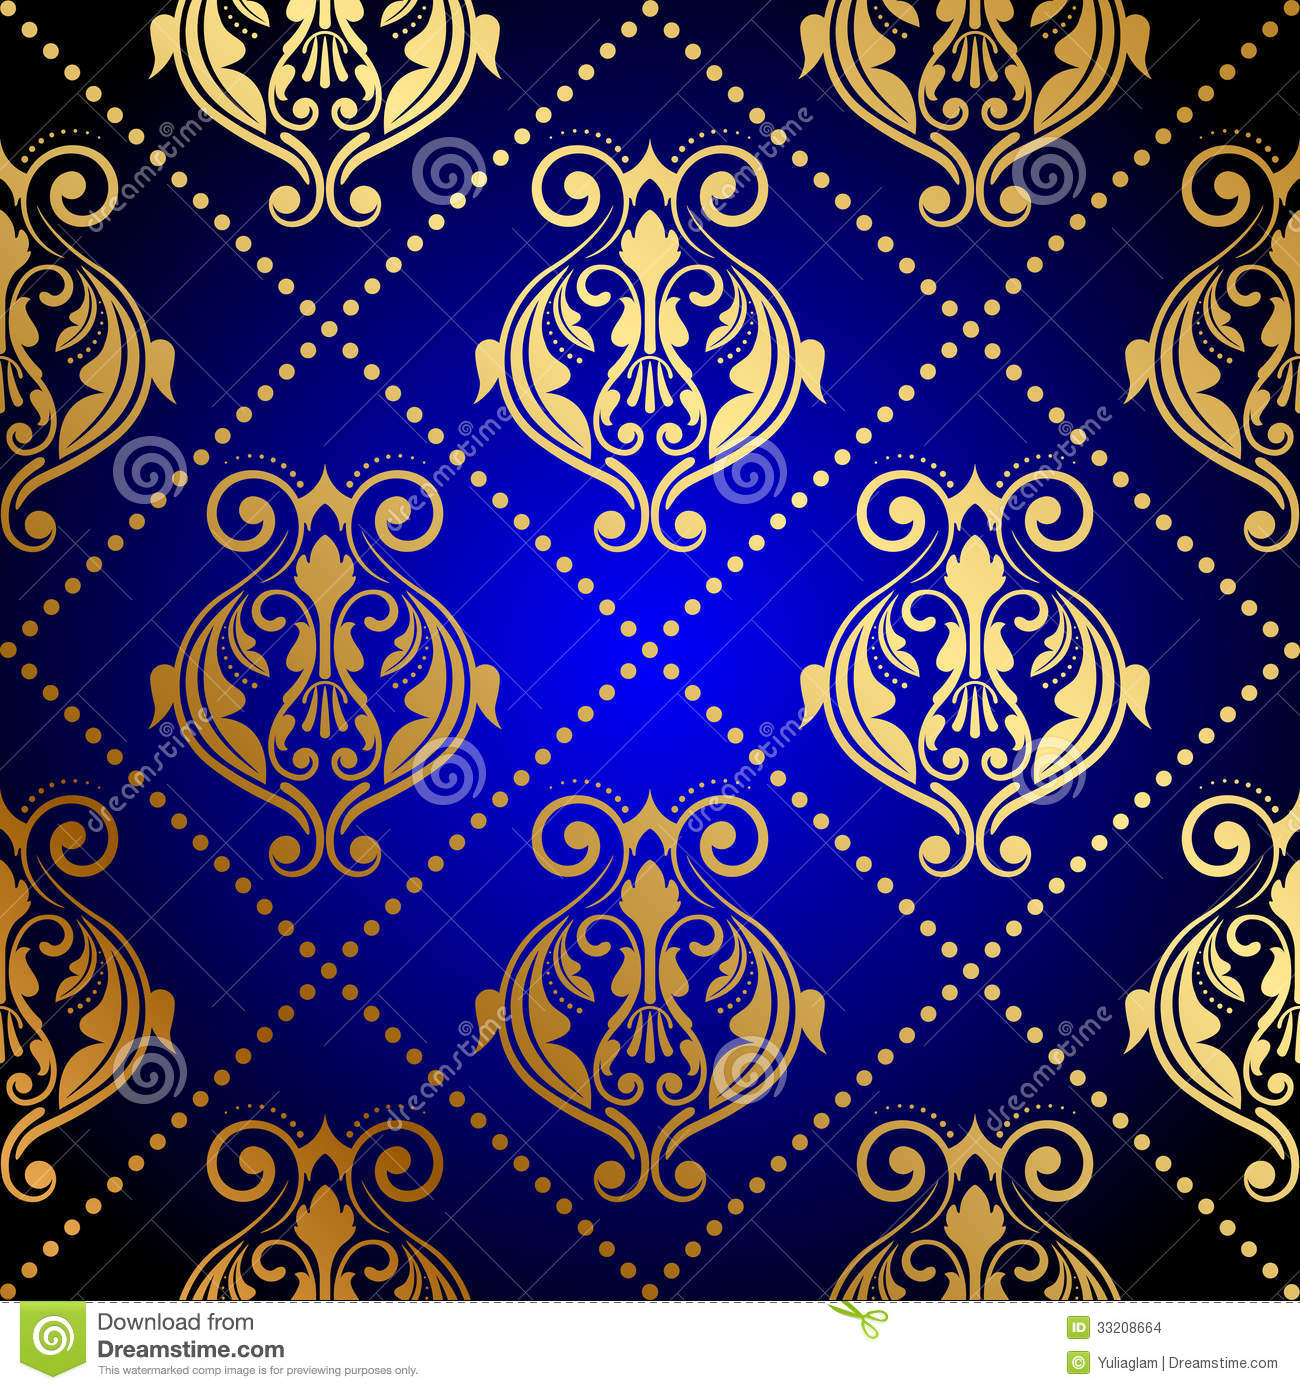 ブルーとゴールドの壁紙,パターン,モチーフ,設計,視覚芸術,コバルトブルー